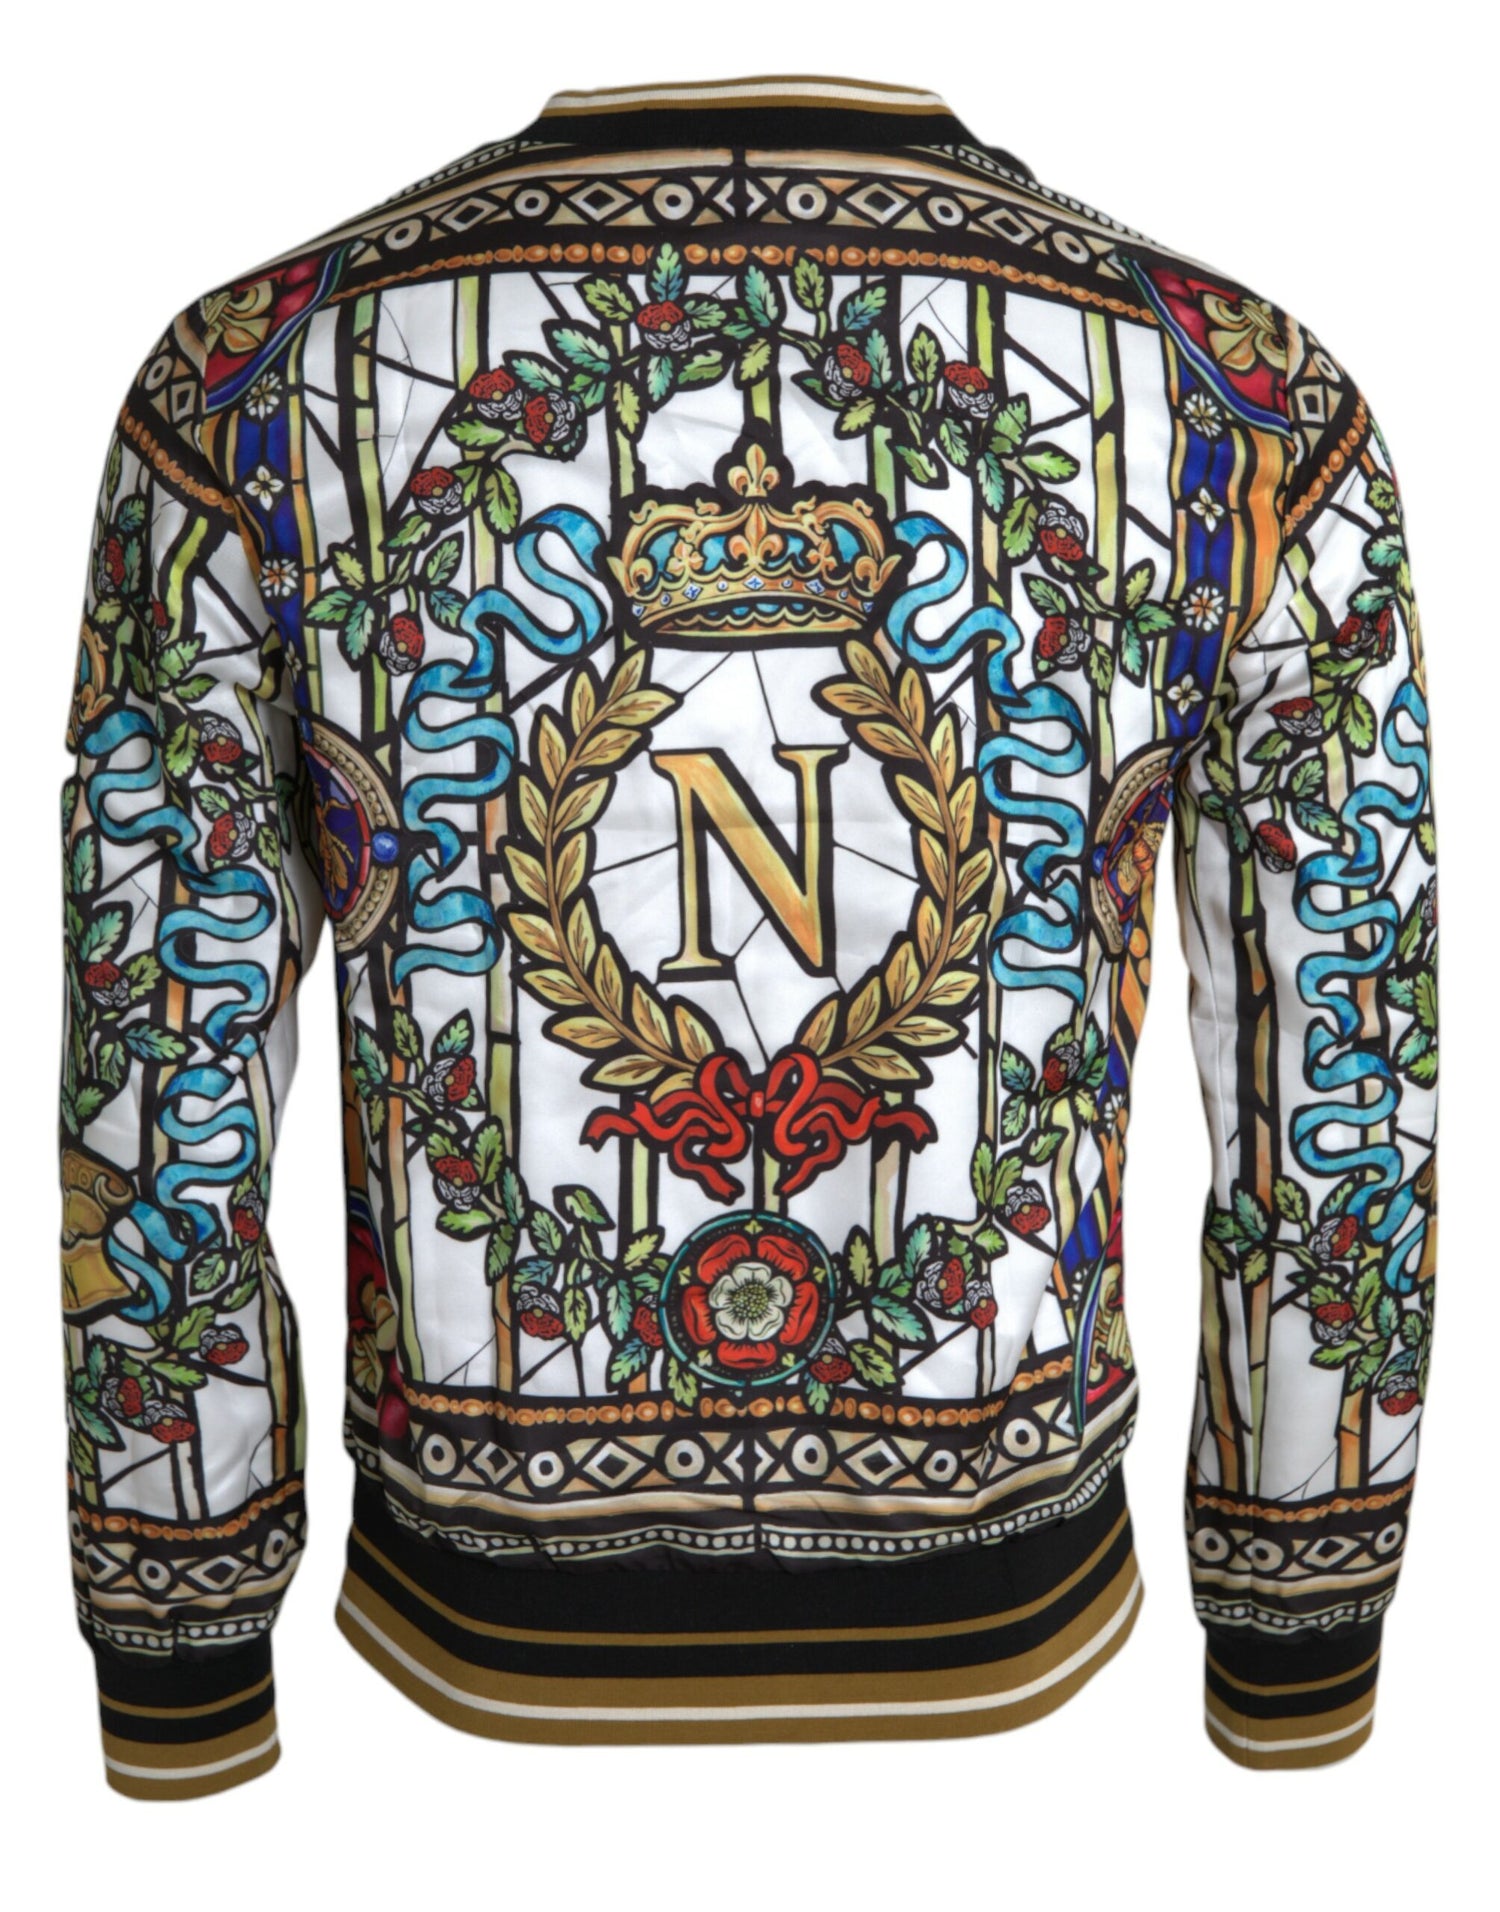 Dolce & Gabbana Napoleon Print Crew Neck Pullover Sweater - DEA STILOSA MILANO